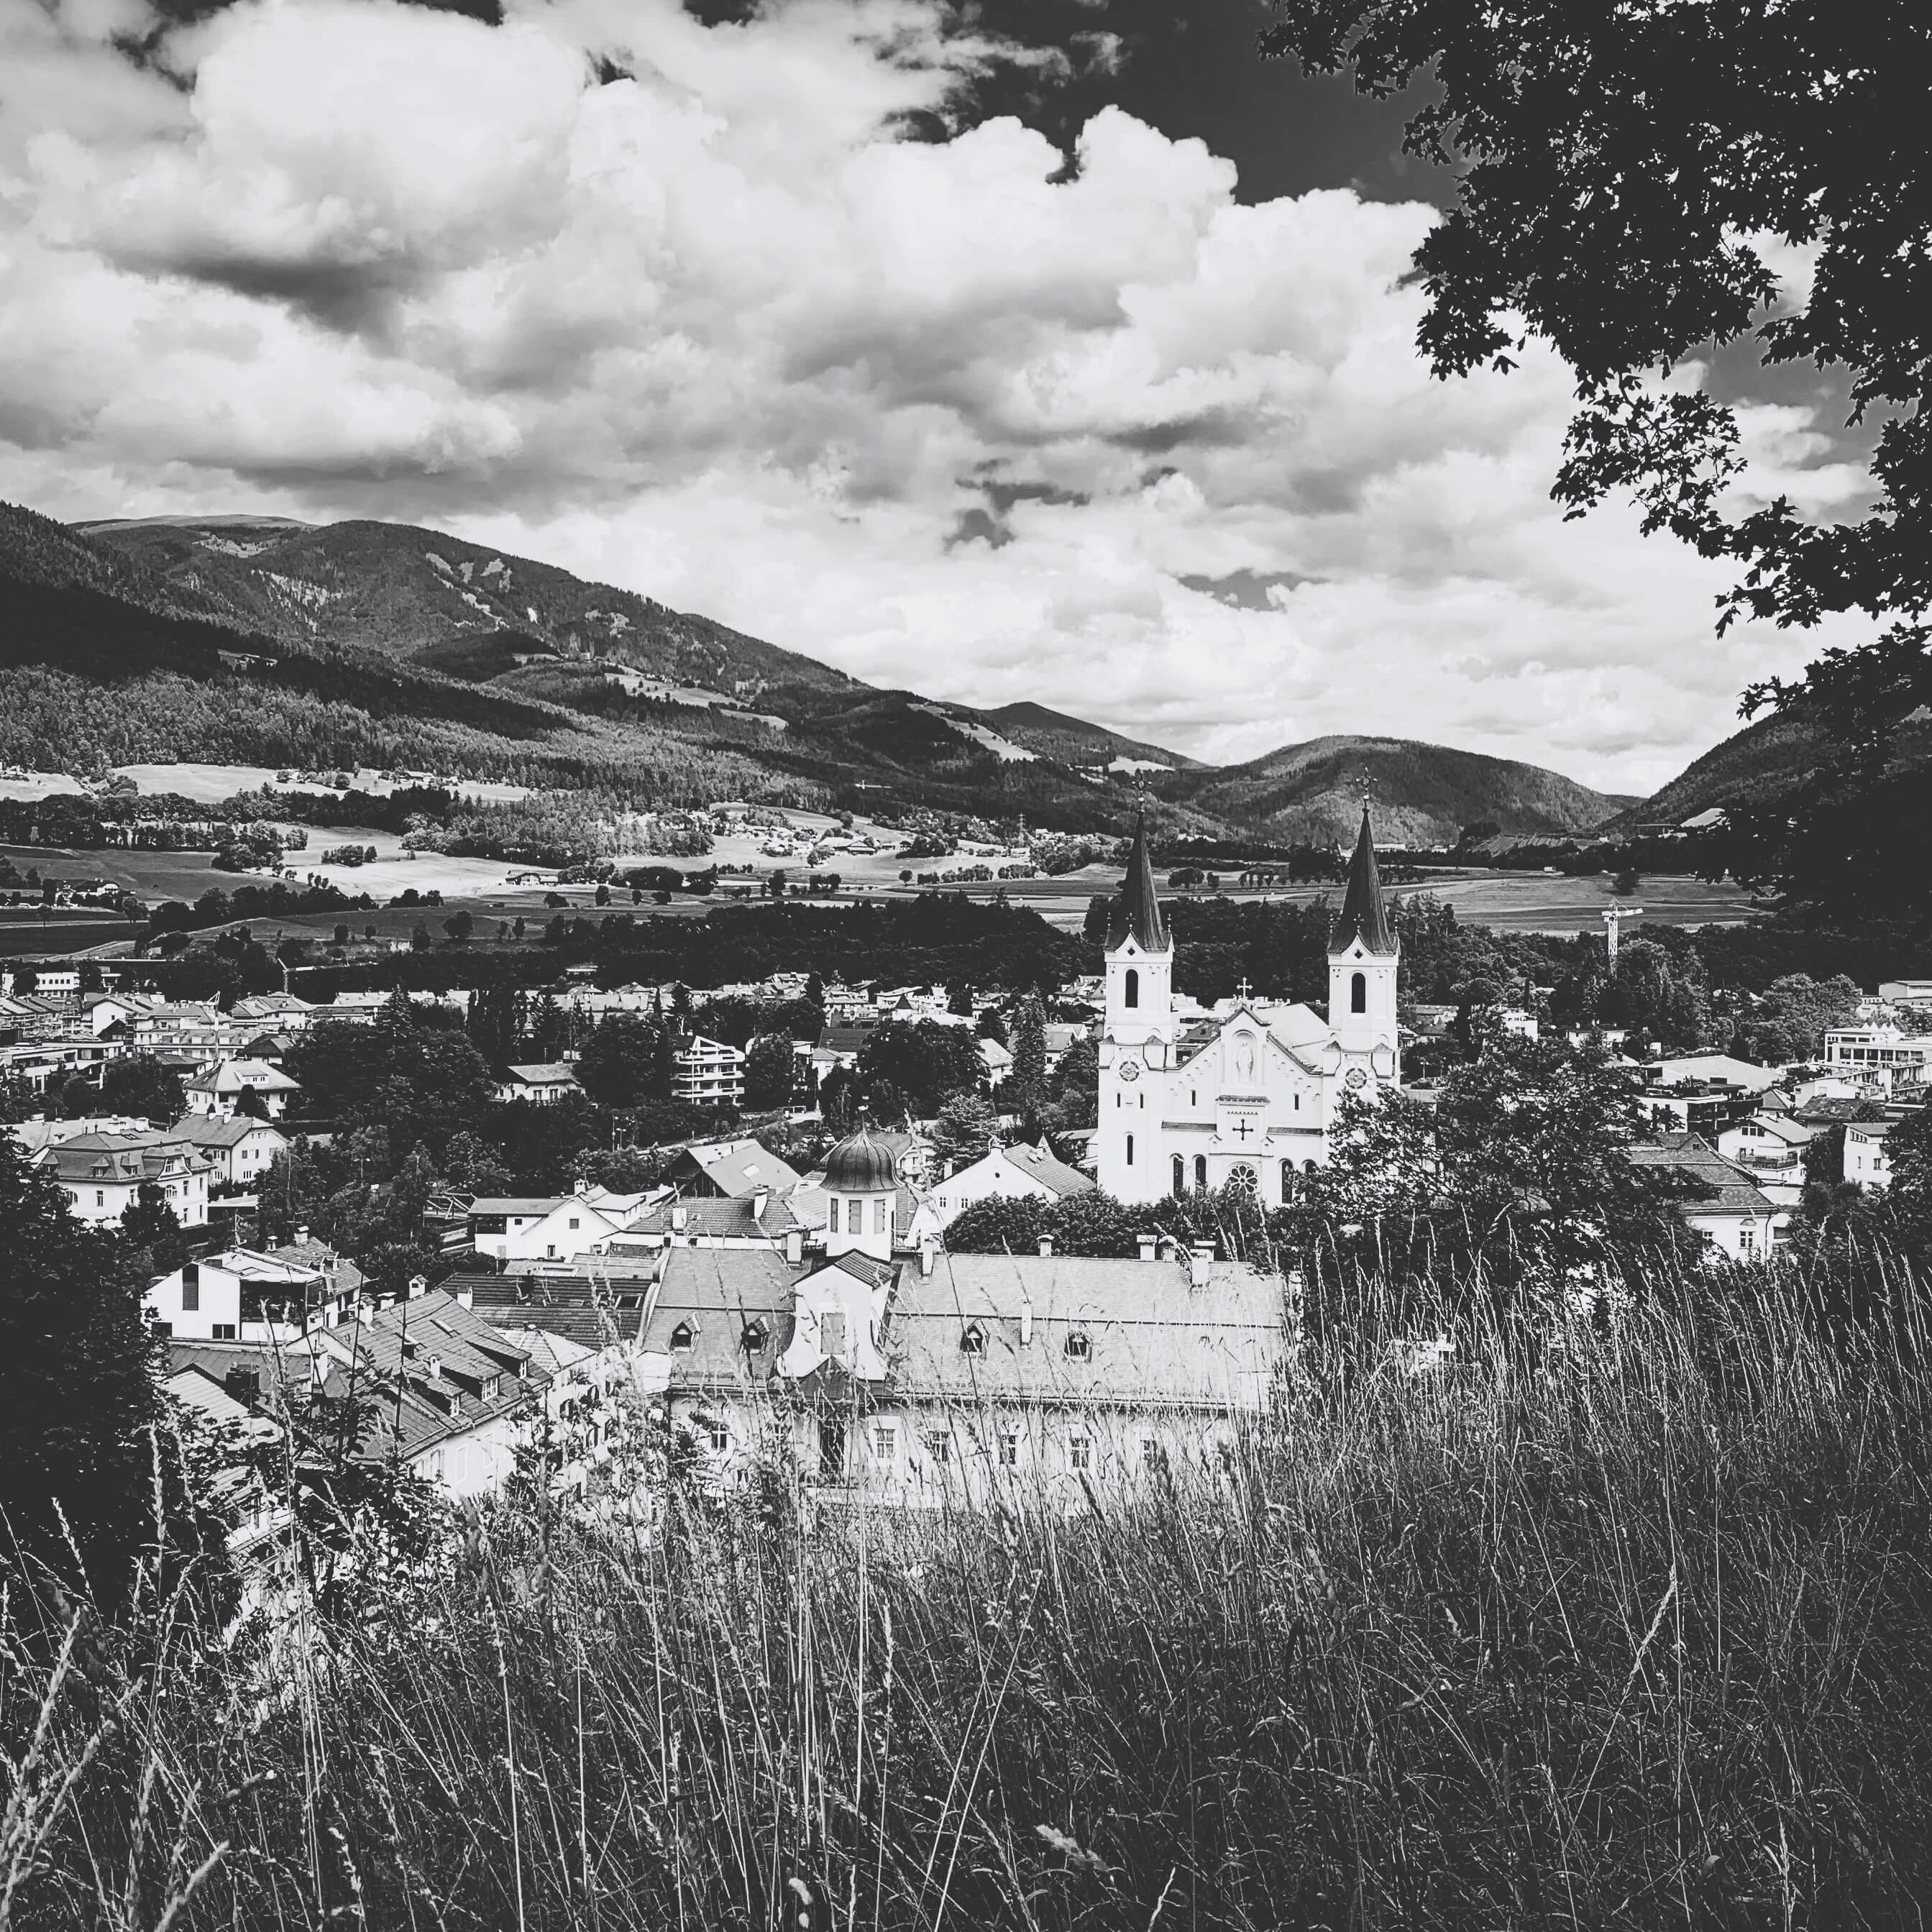 The village of Bruneck